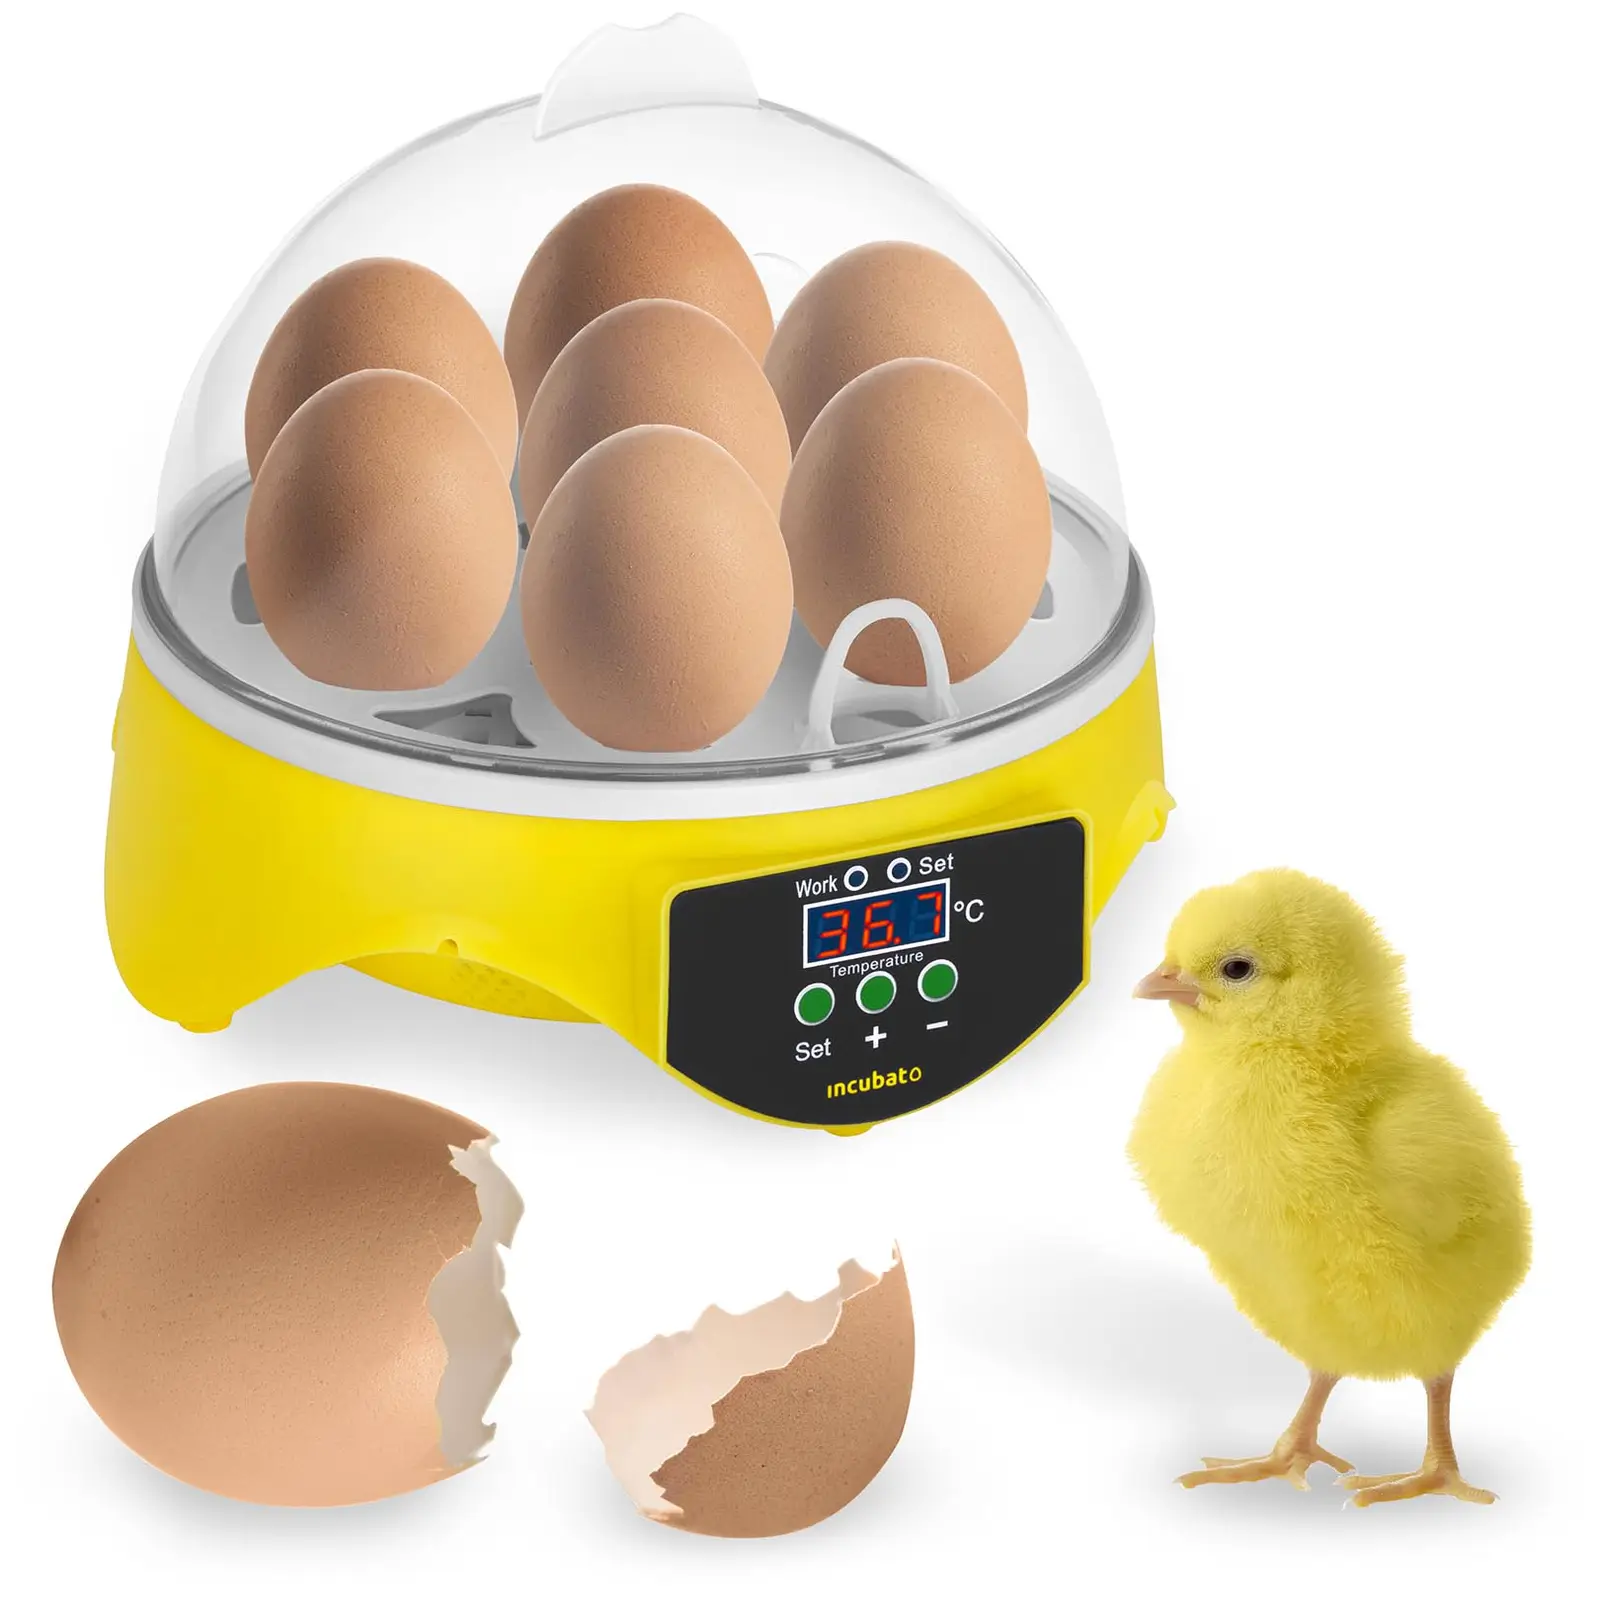 Incubatrice per uova - 7 uova - Lampada sperauova inclusa